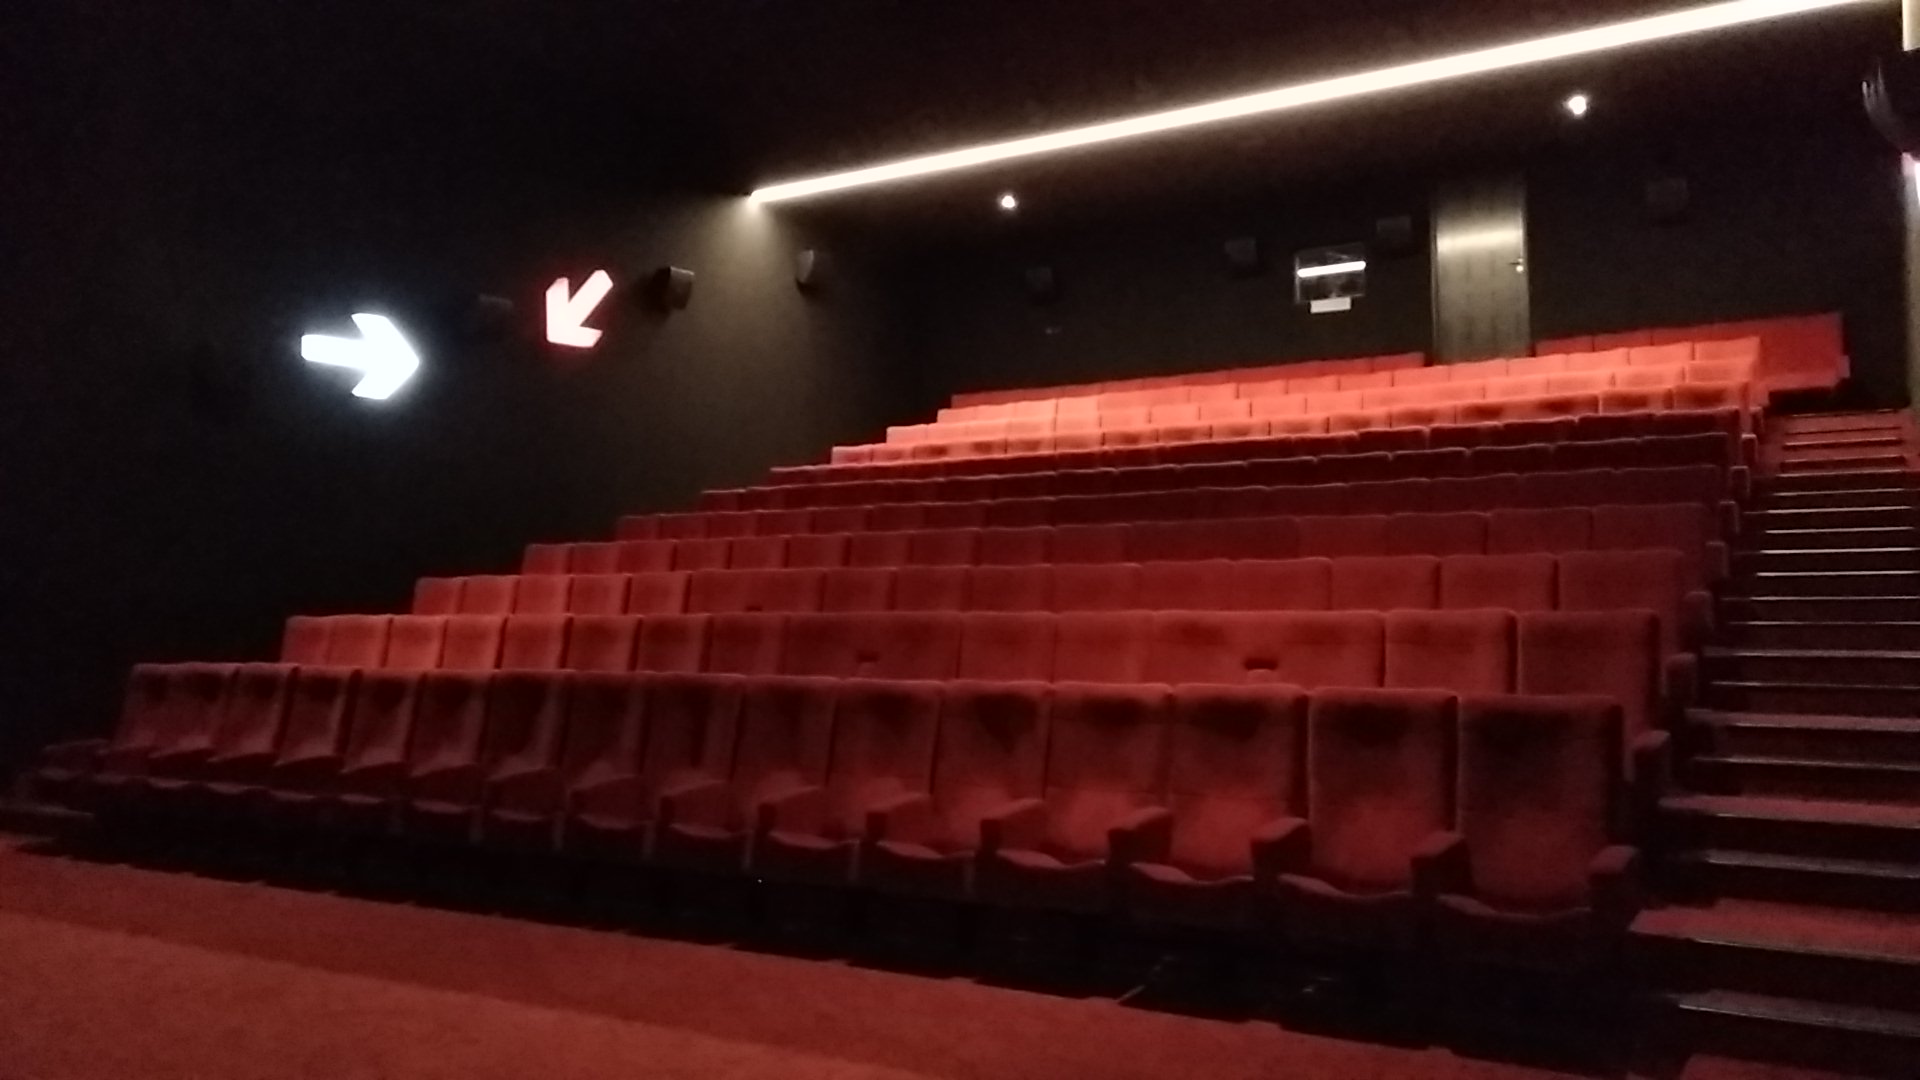 Kleslo - fauteuil Inertie - Leader de fabrication de fauteuils cinéma, théâtre ... Cinéma confluence sablé sur Sarthe v3